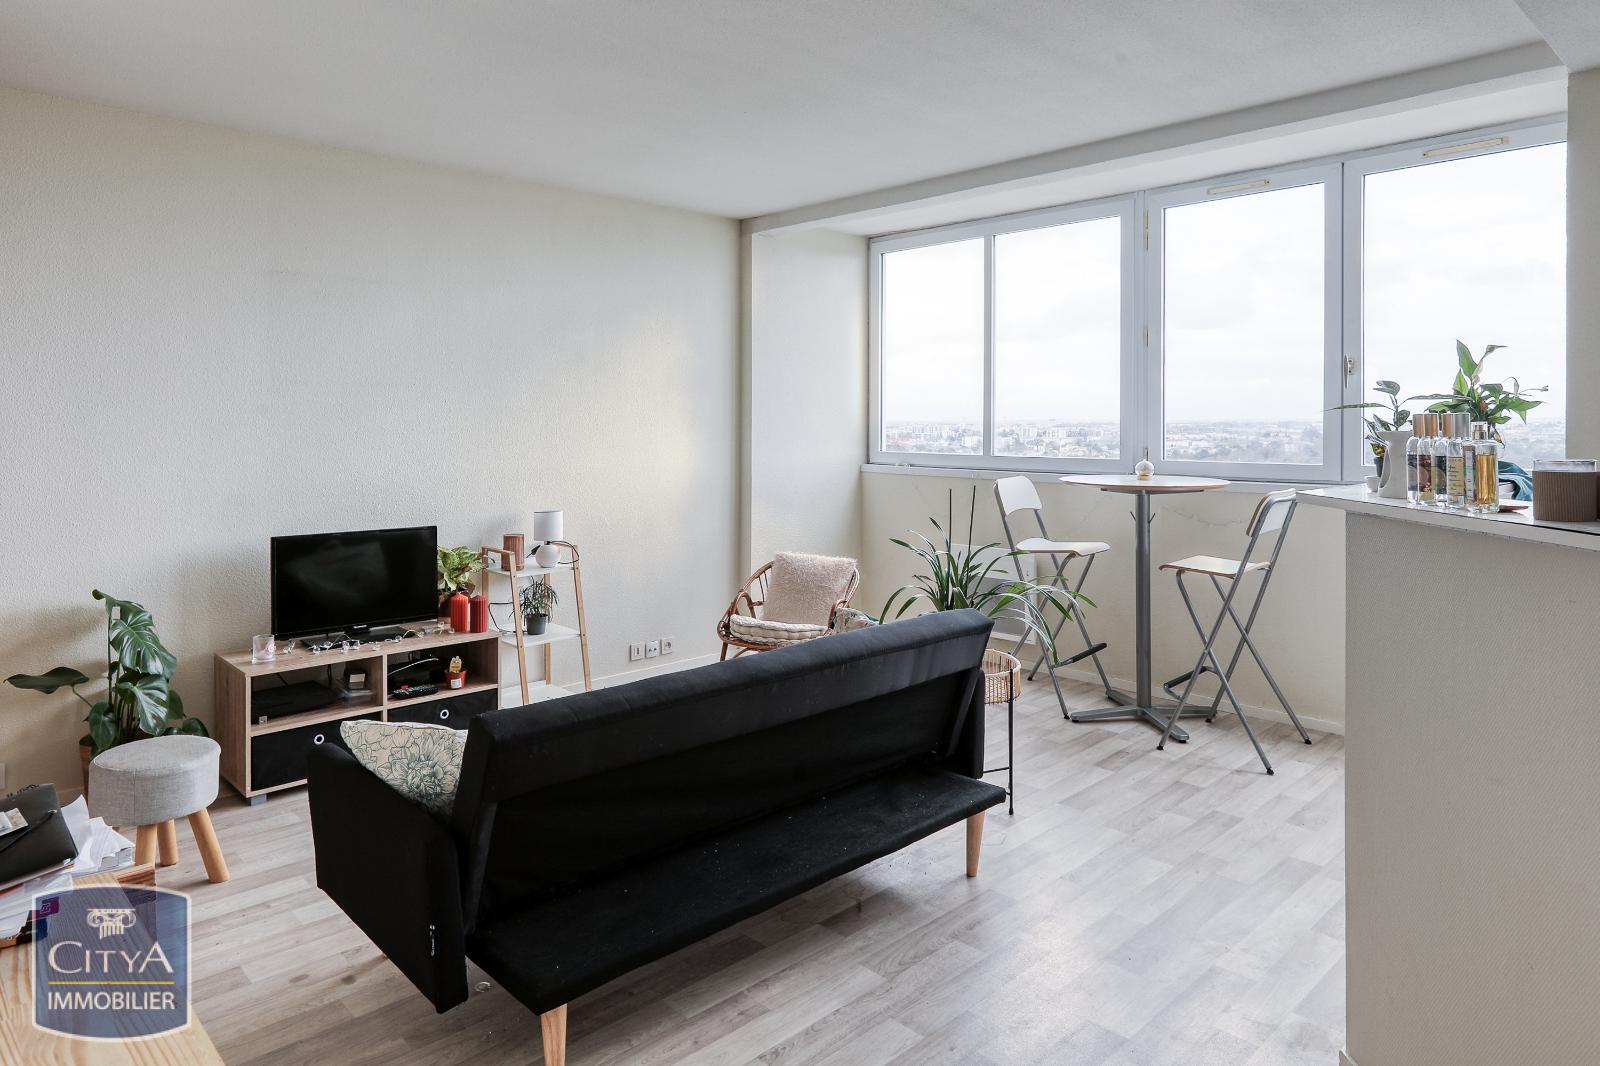 Vente Appartement 44m² 2 Pièces à Angers (49000) - Citya